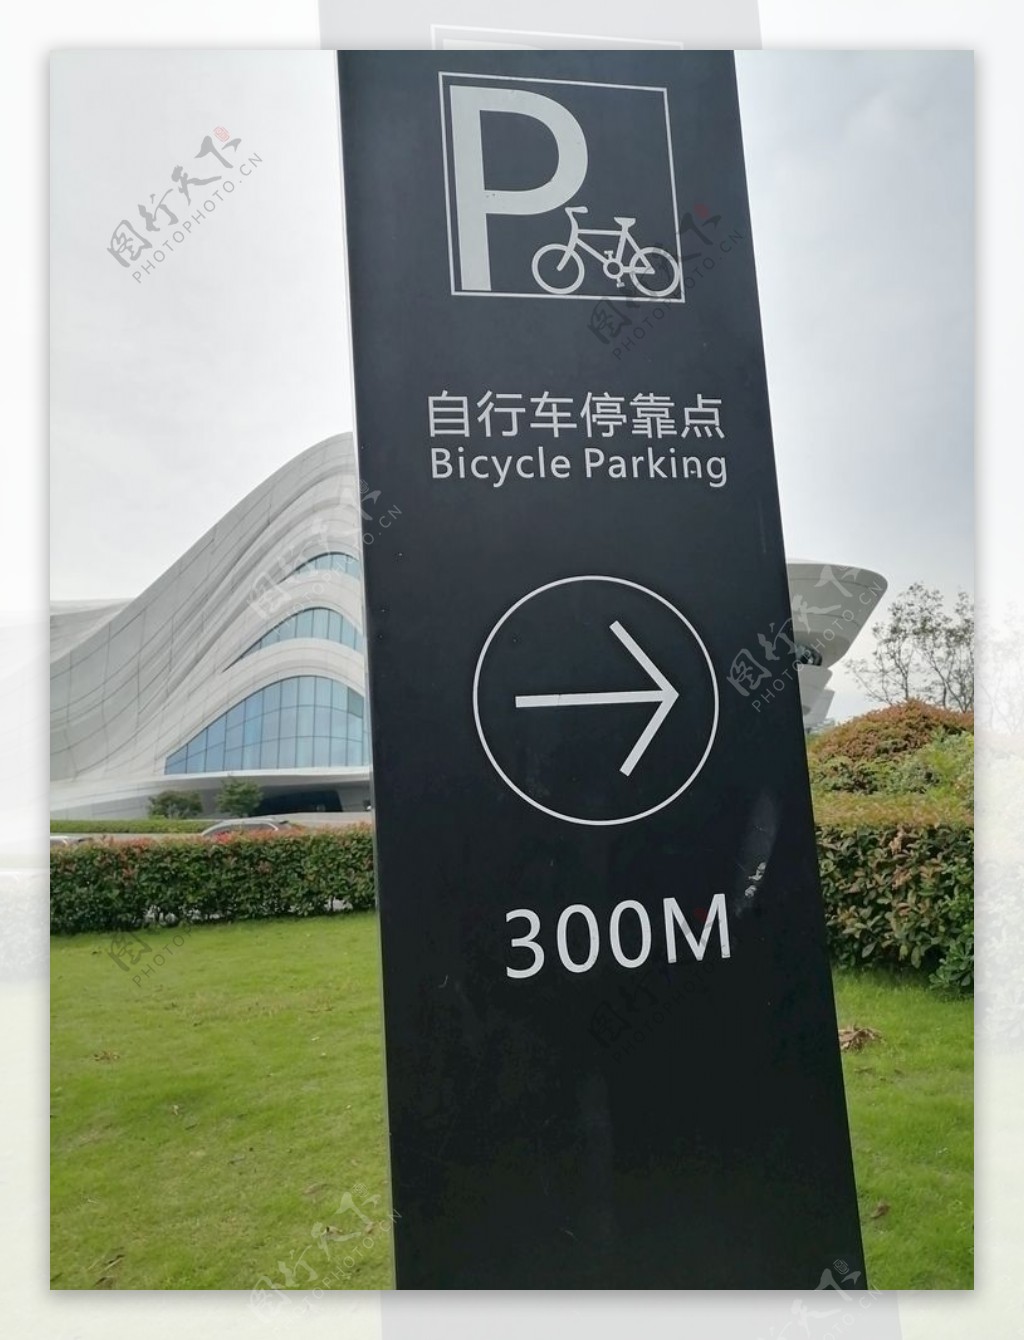 自行车停靠站点指示牌